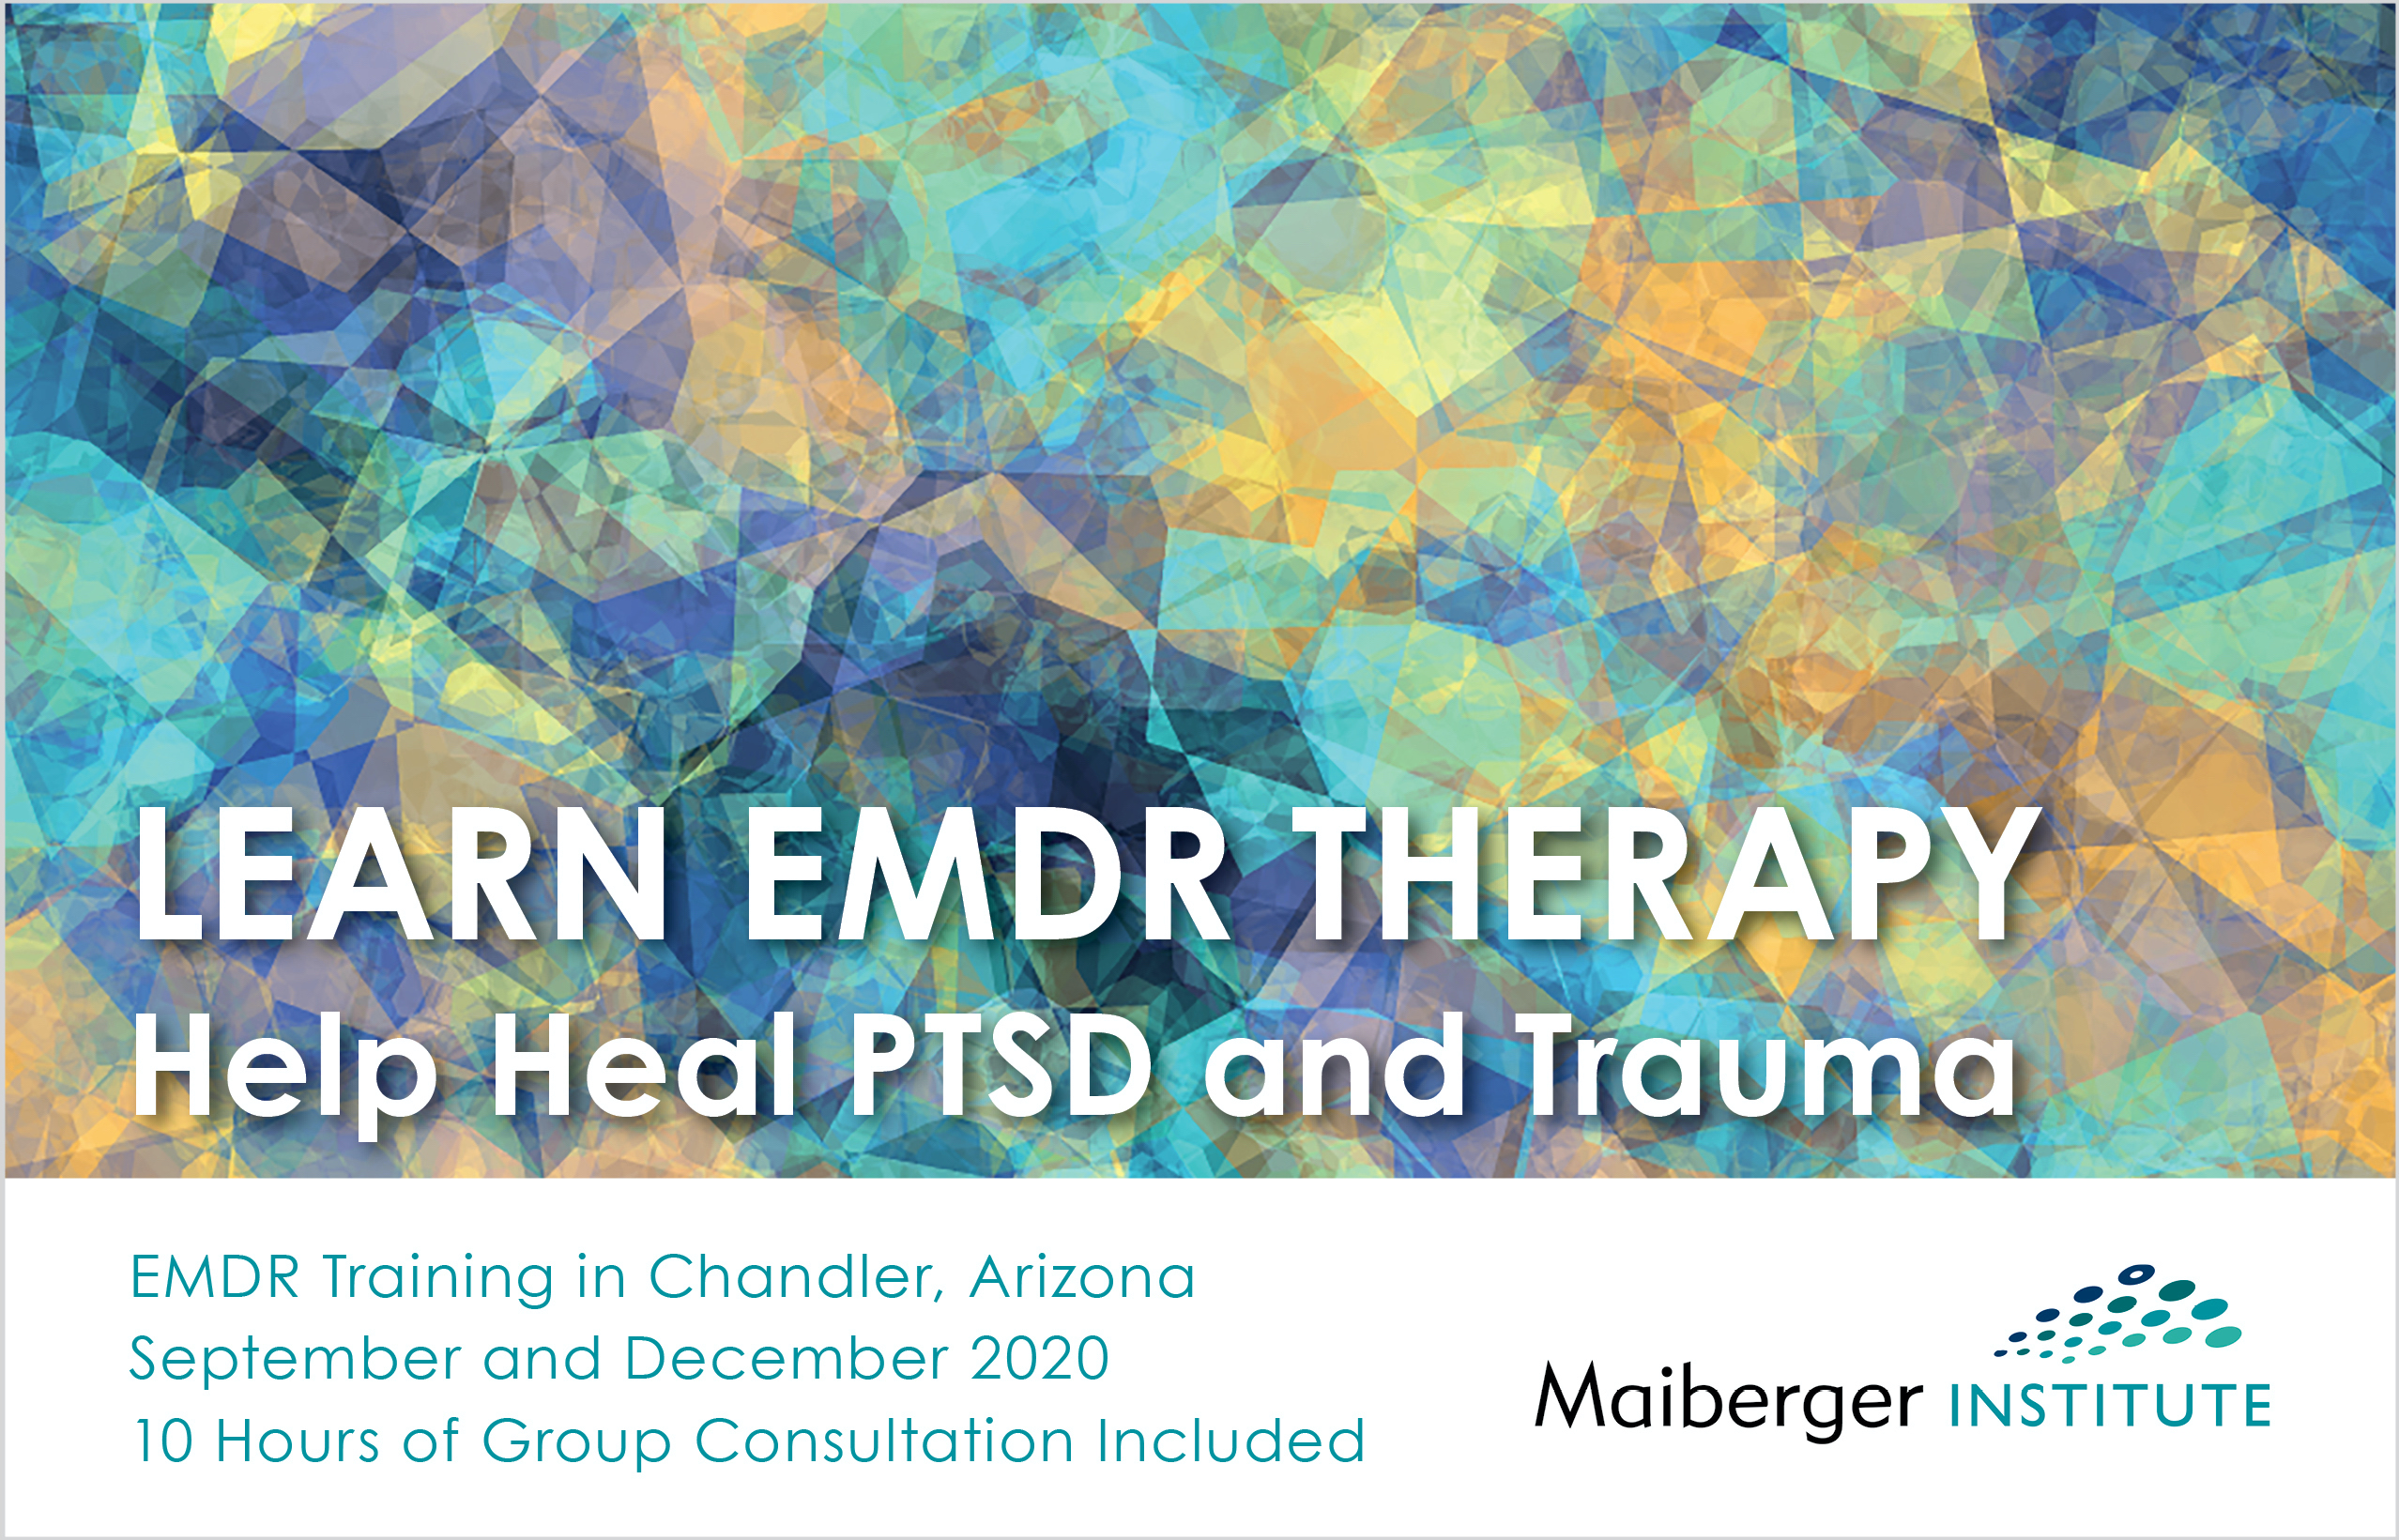 EMDR Training in Chandler, Arizona - September and December 2020 - EMDR Events Calendar - Maiberger Institute